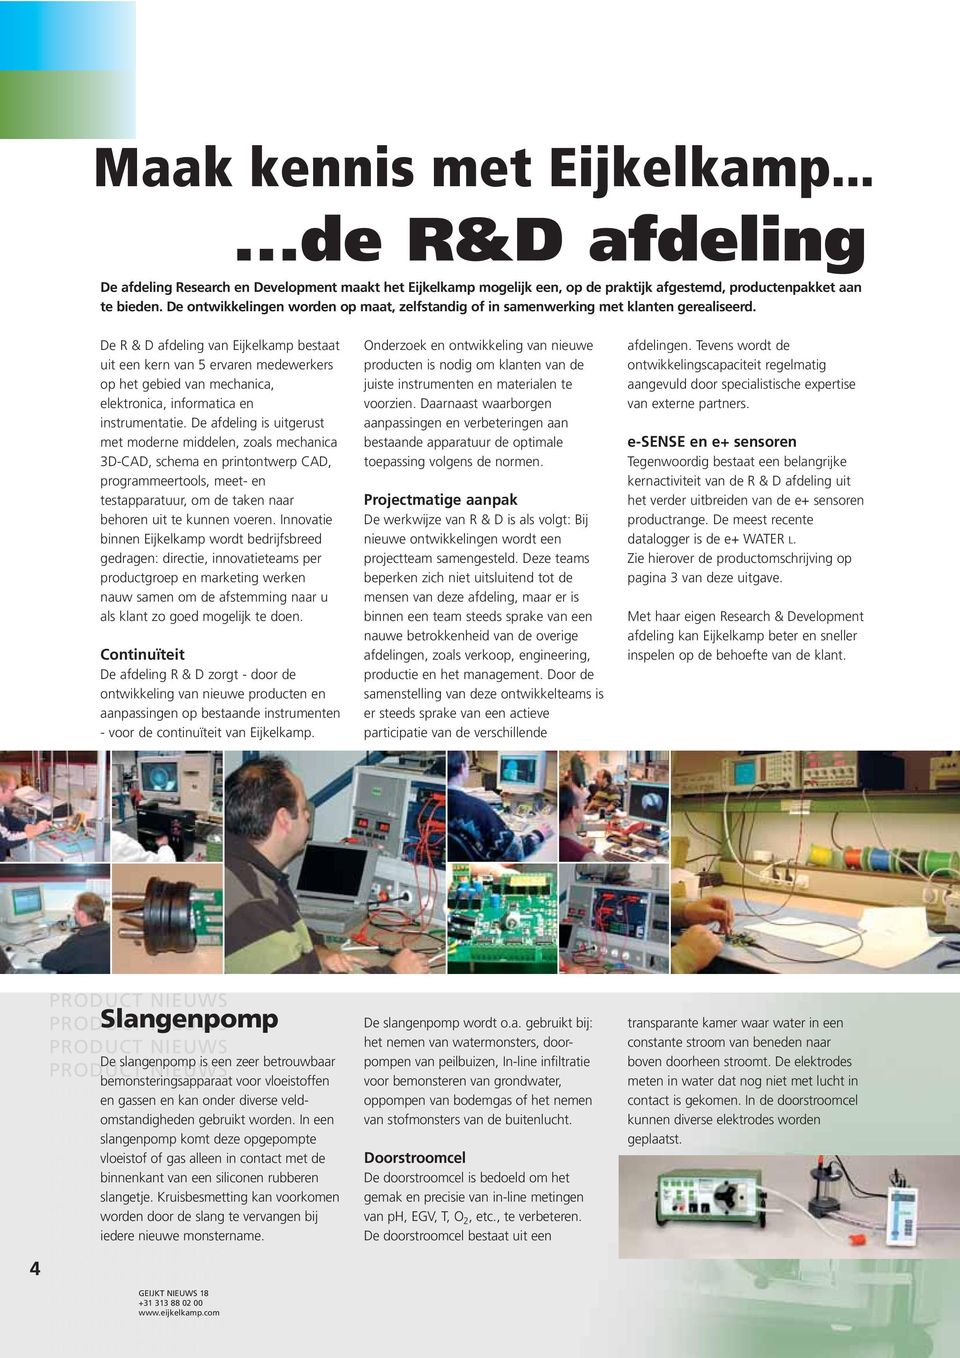 De R & D afdeling van Eijkelkamp bestaat uit een kern van 5 ervaren medewerkers op het gebied van mechanica, elektronica, informatica en instrumentatie.